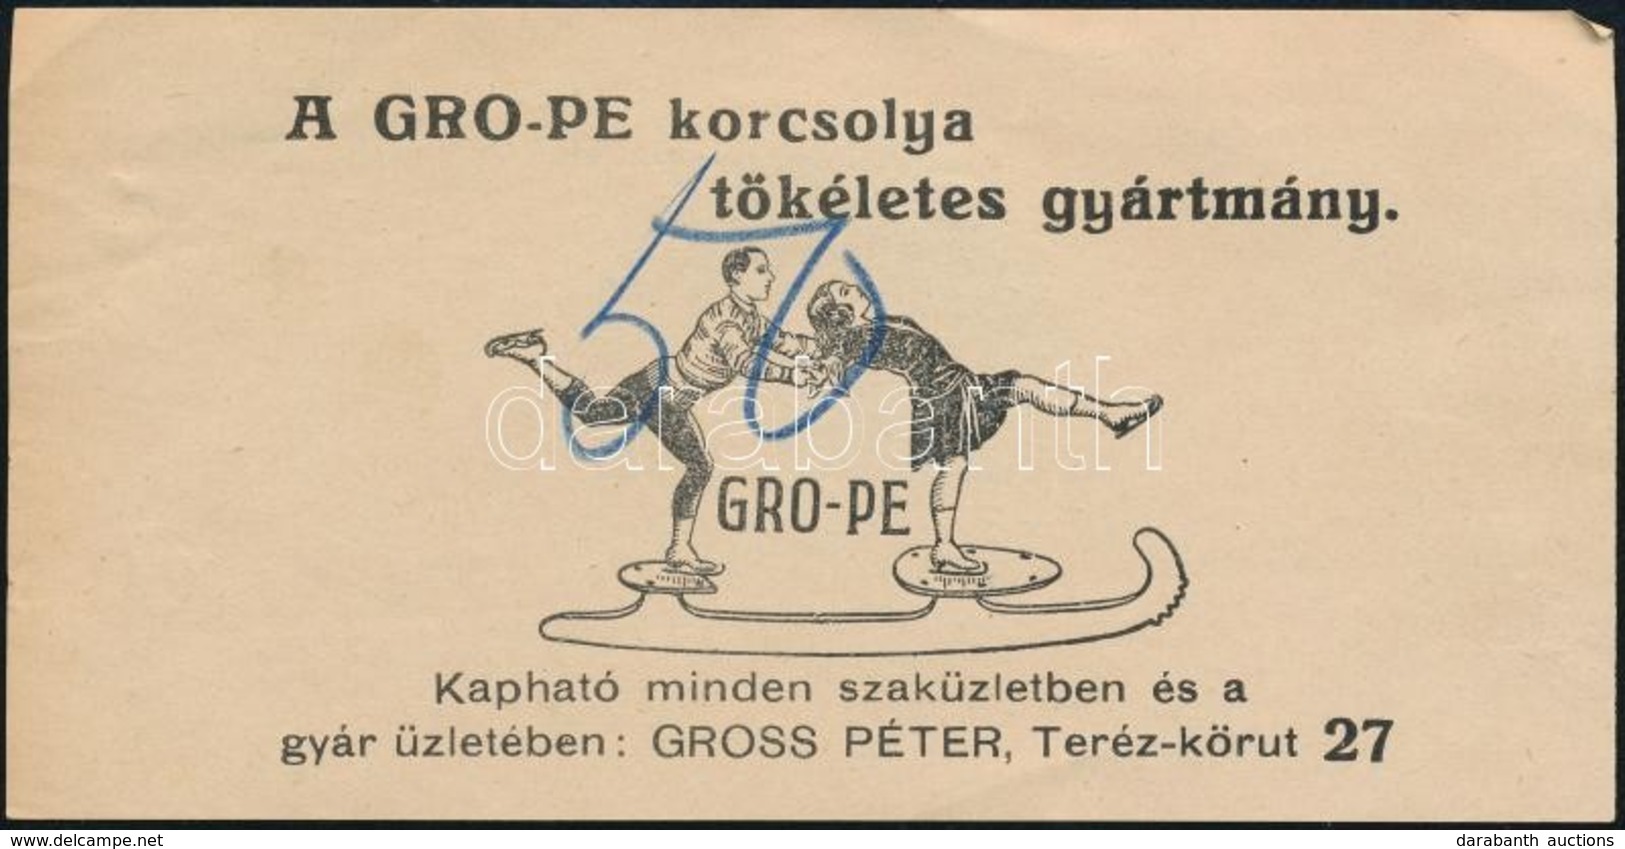 Gro-Pe Korcsolya, Gross Péter Budapesti üzletében - Számolócédula - Advertising